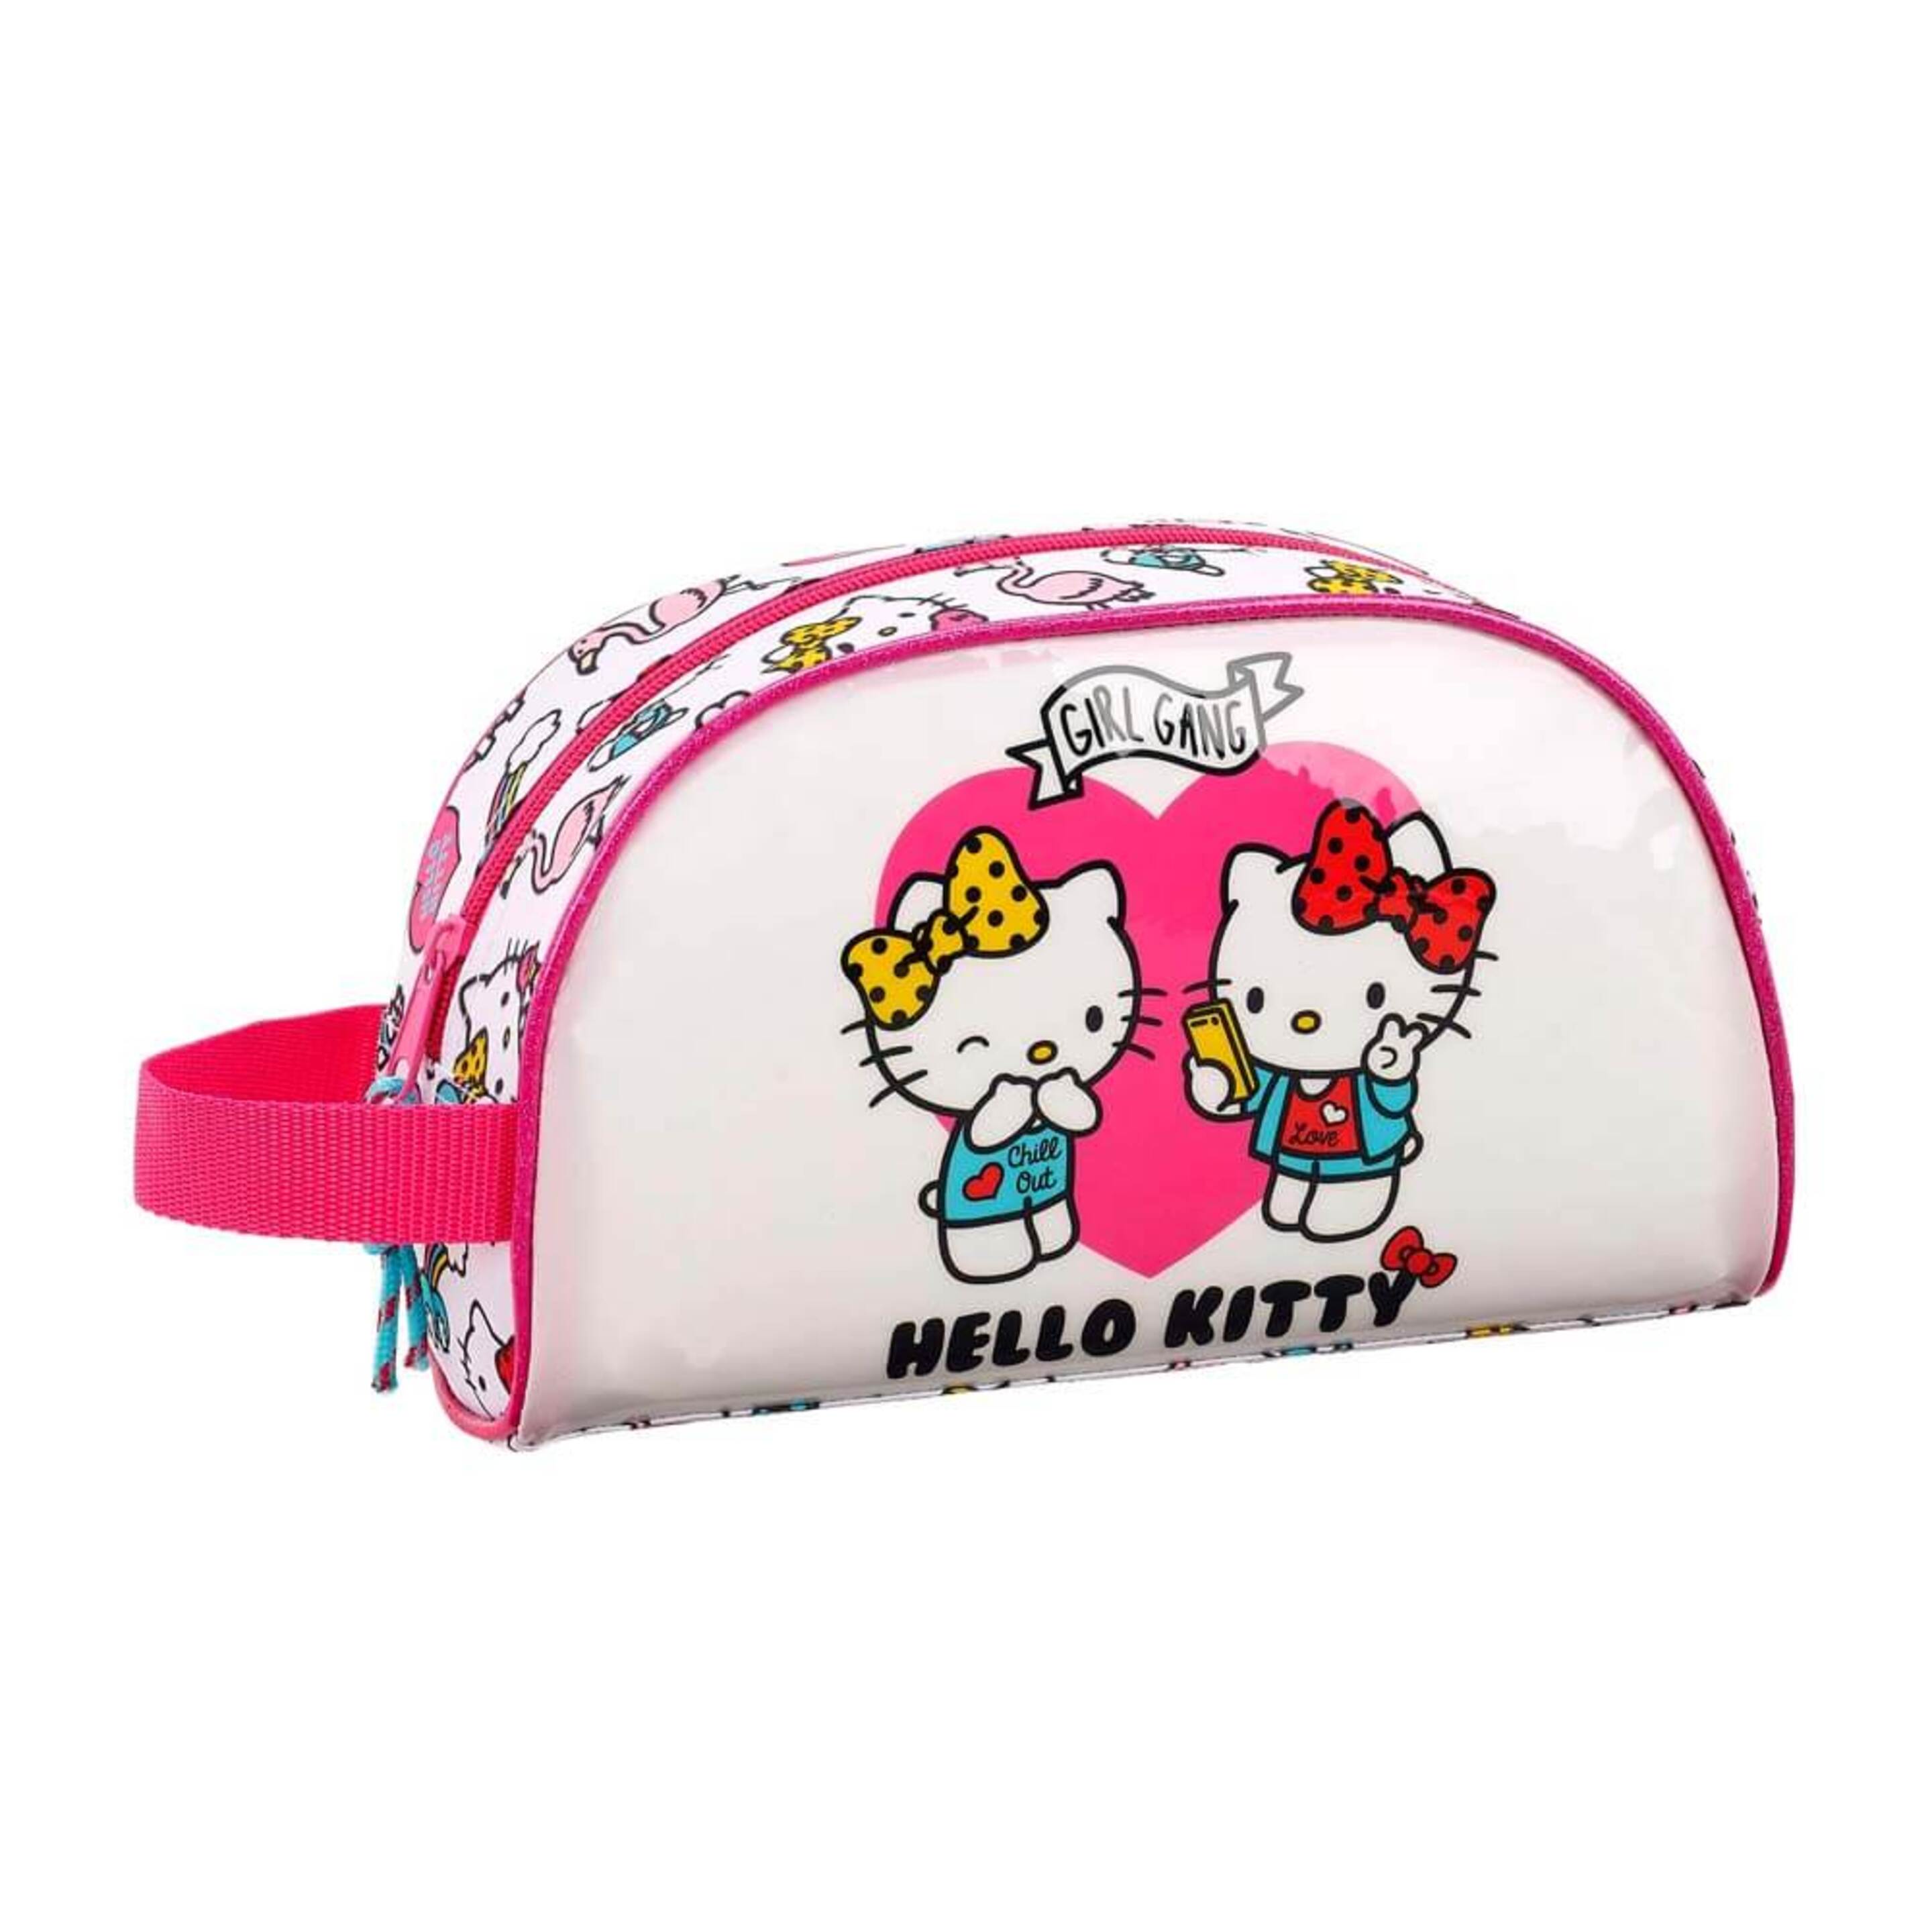 Hello Kitty 811816824 2018 Bolsa De Aseo, 26 Cm, Rosa